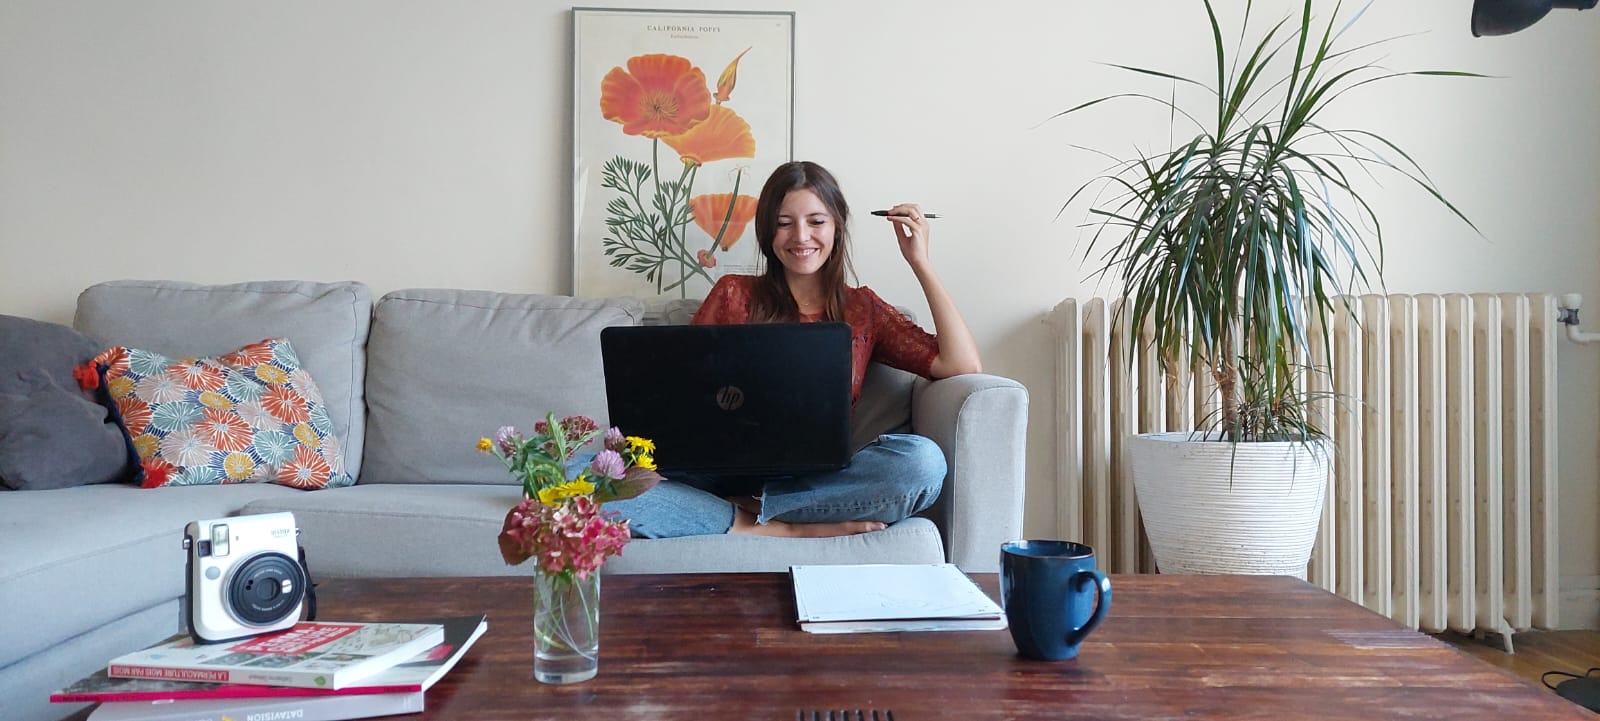 Vive la bidouille - illustration jeune femme en train de travailler sur son ordinateur portable